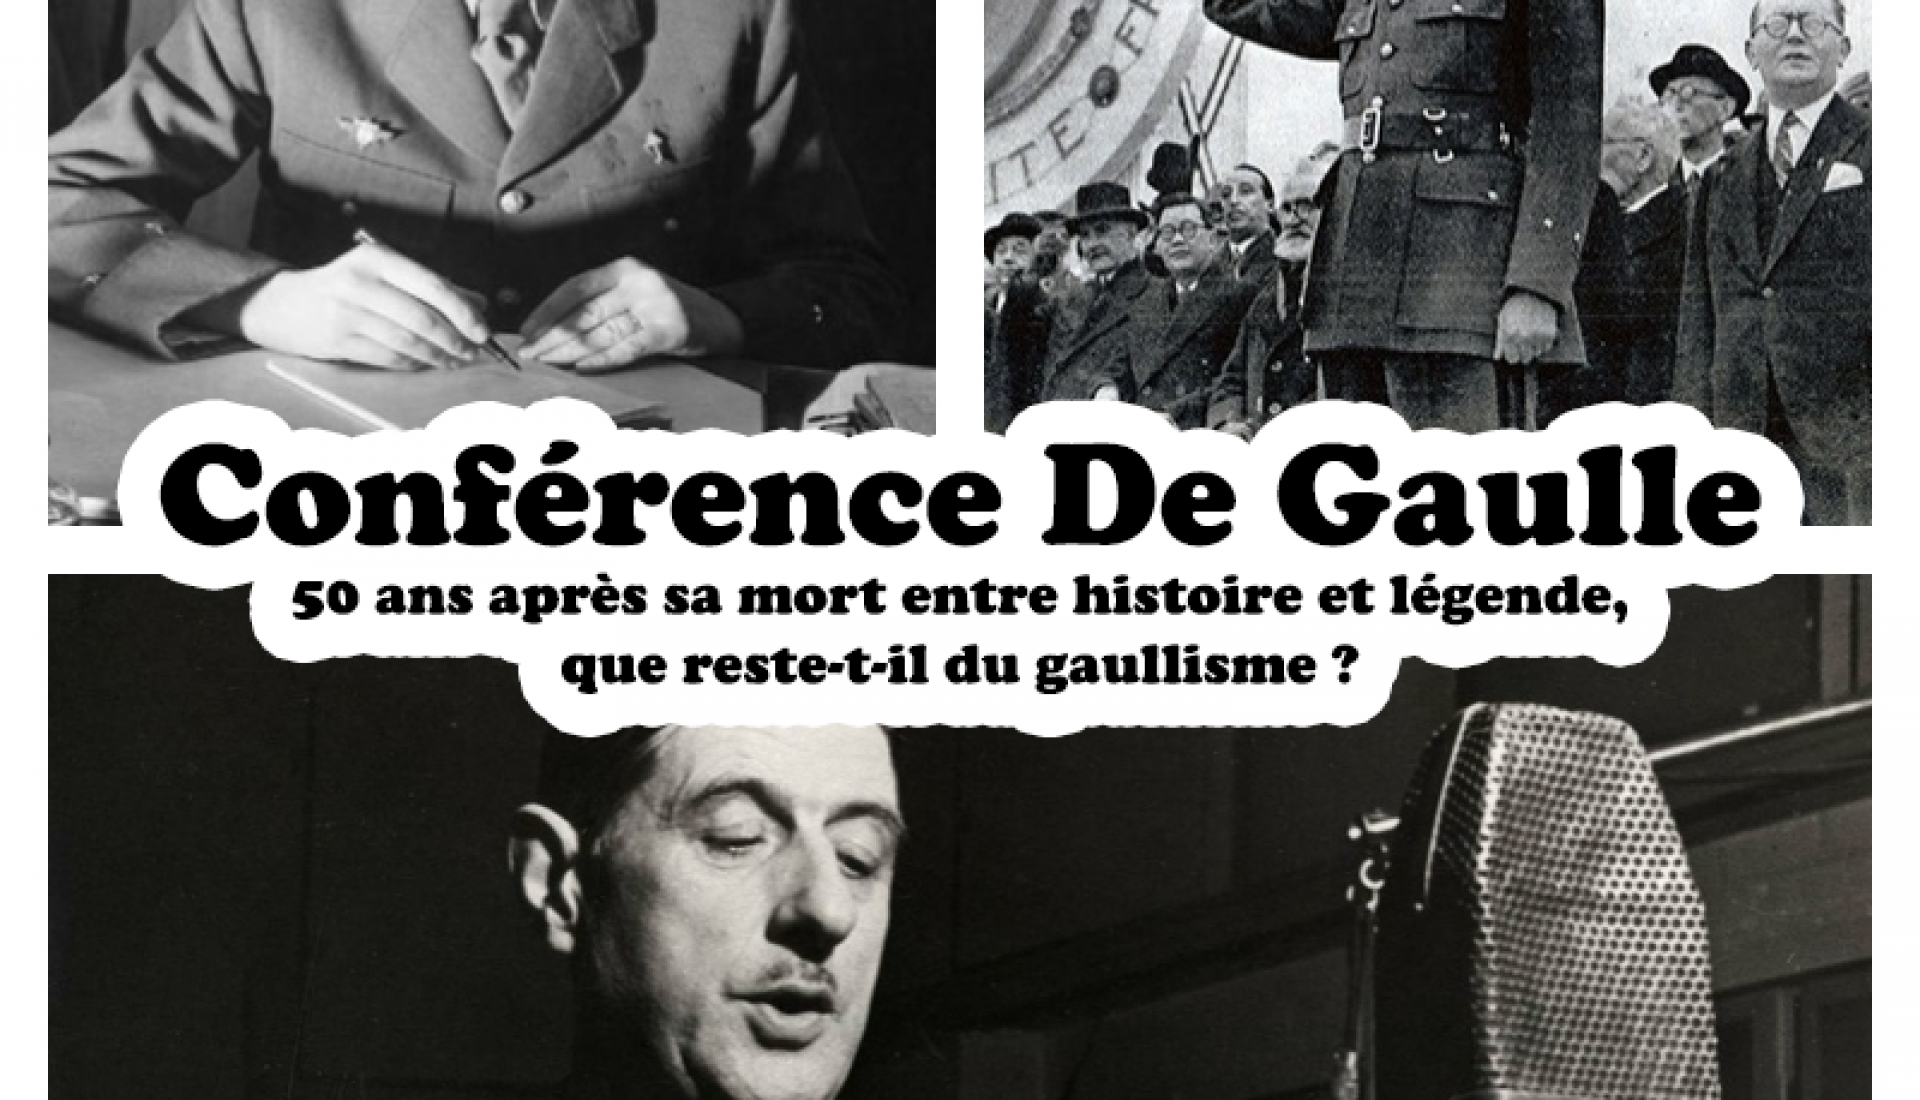 De Gaulle : 50 ans après sa mort entre histoire et légende que reste-t-il du gaullisme ?